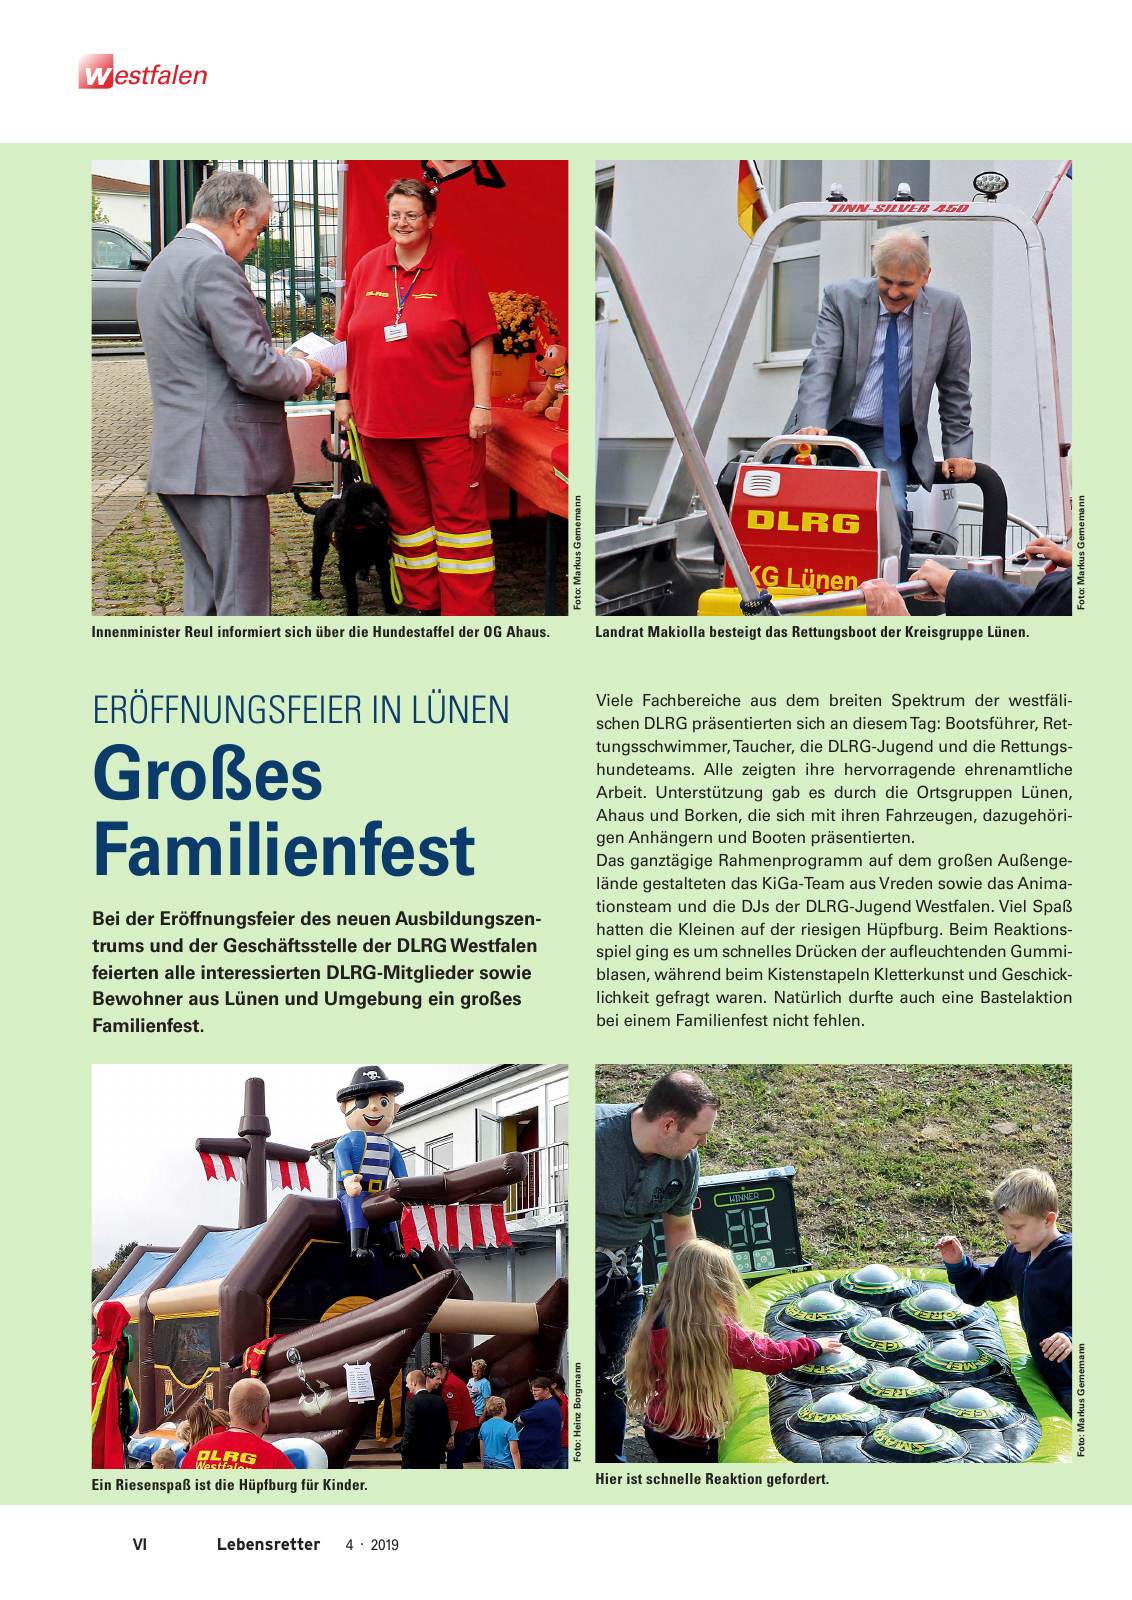 Vorschau Lebensretter 4/2019 -  Westfalen Regionalausgabe Seite 8